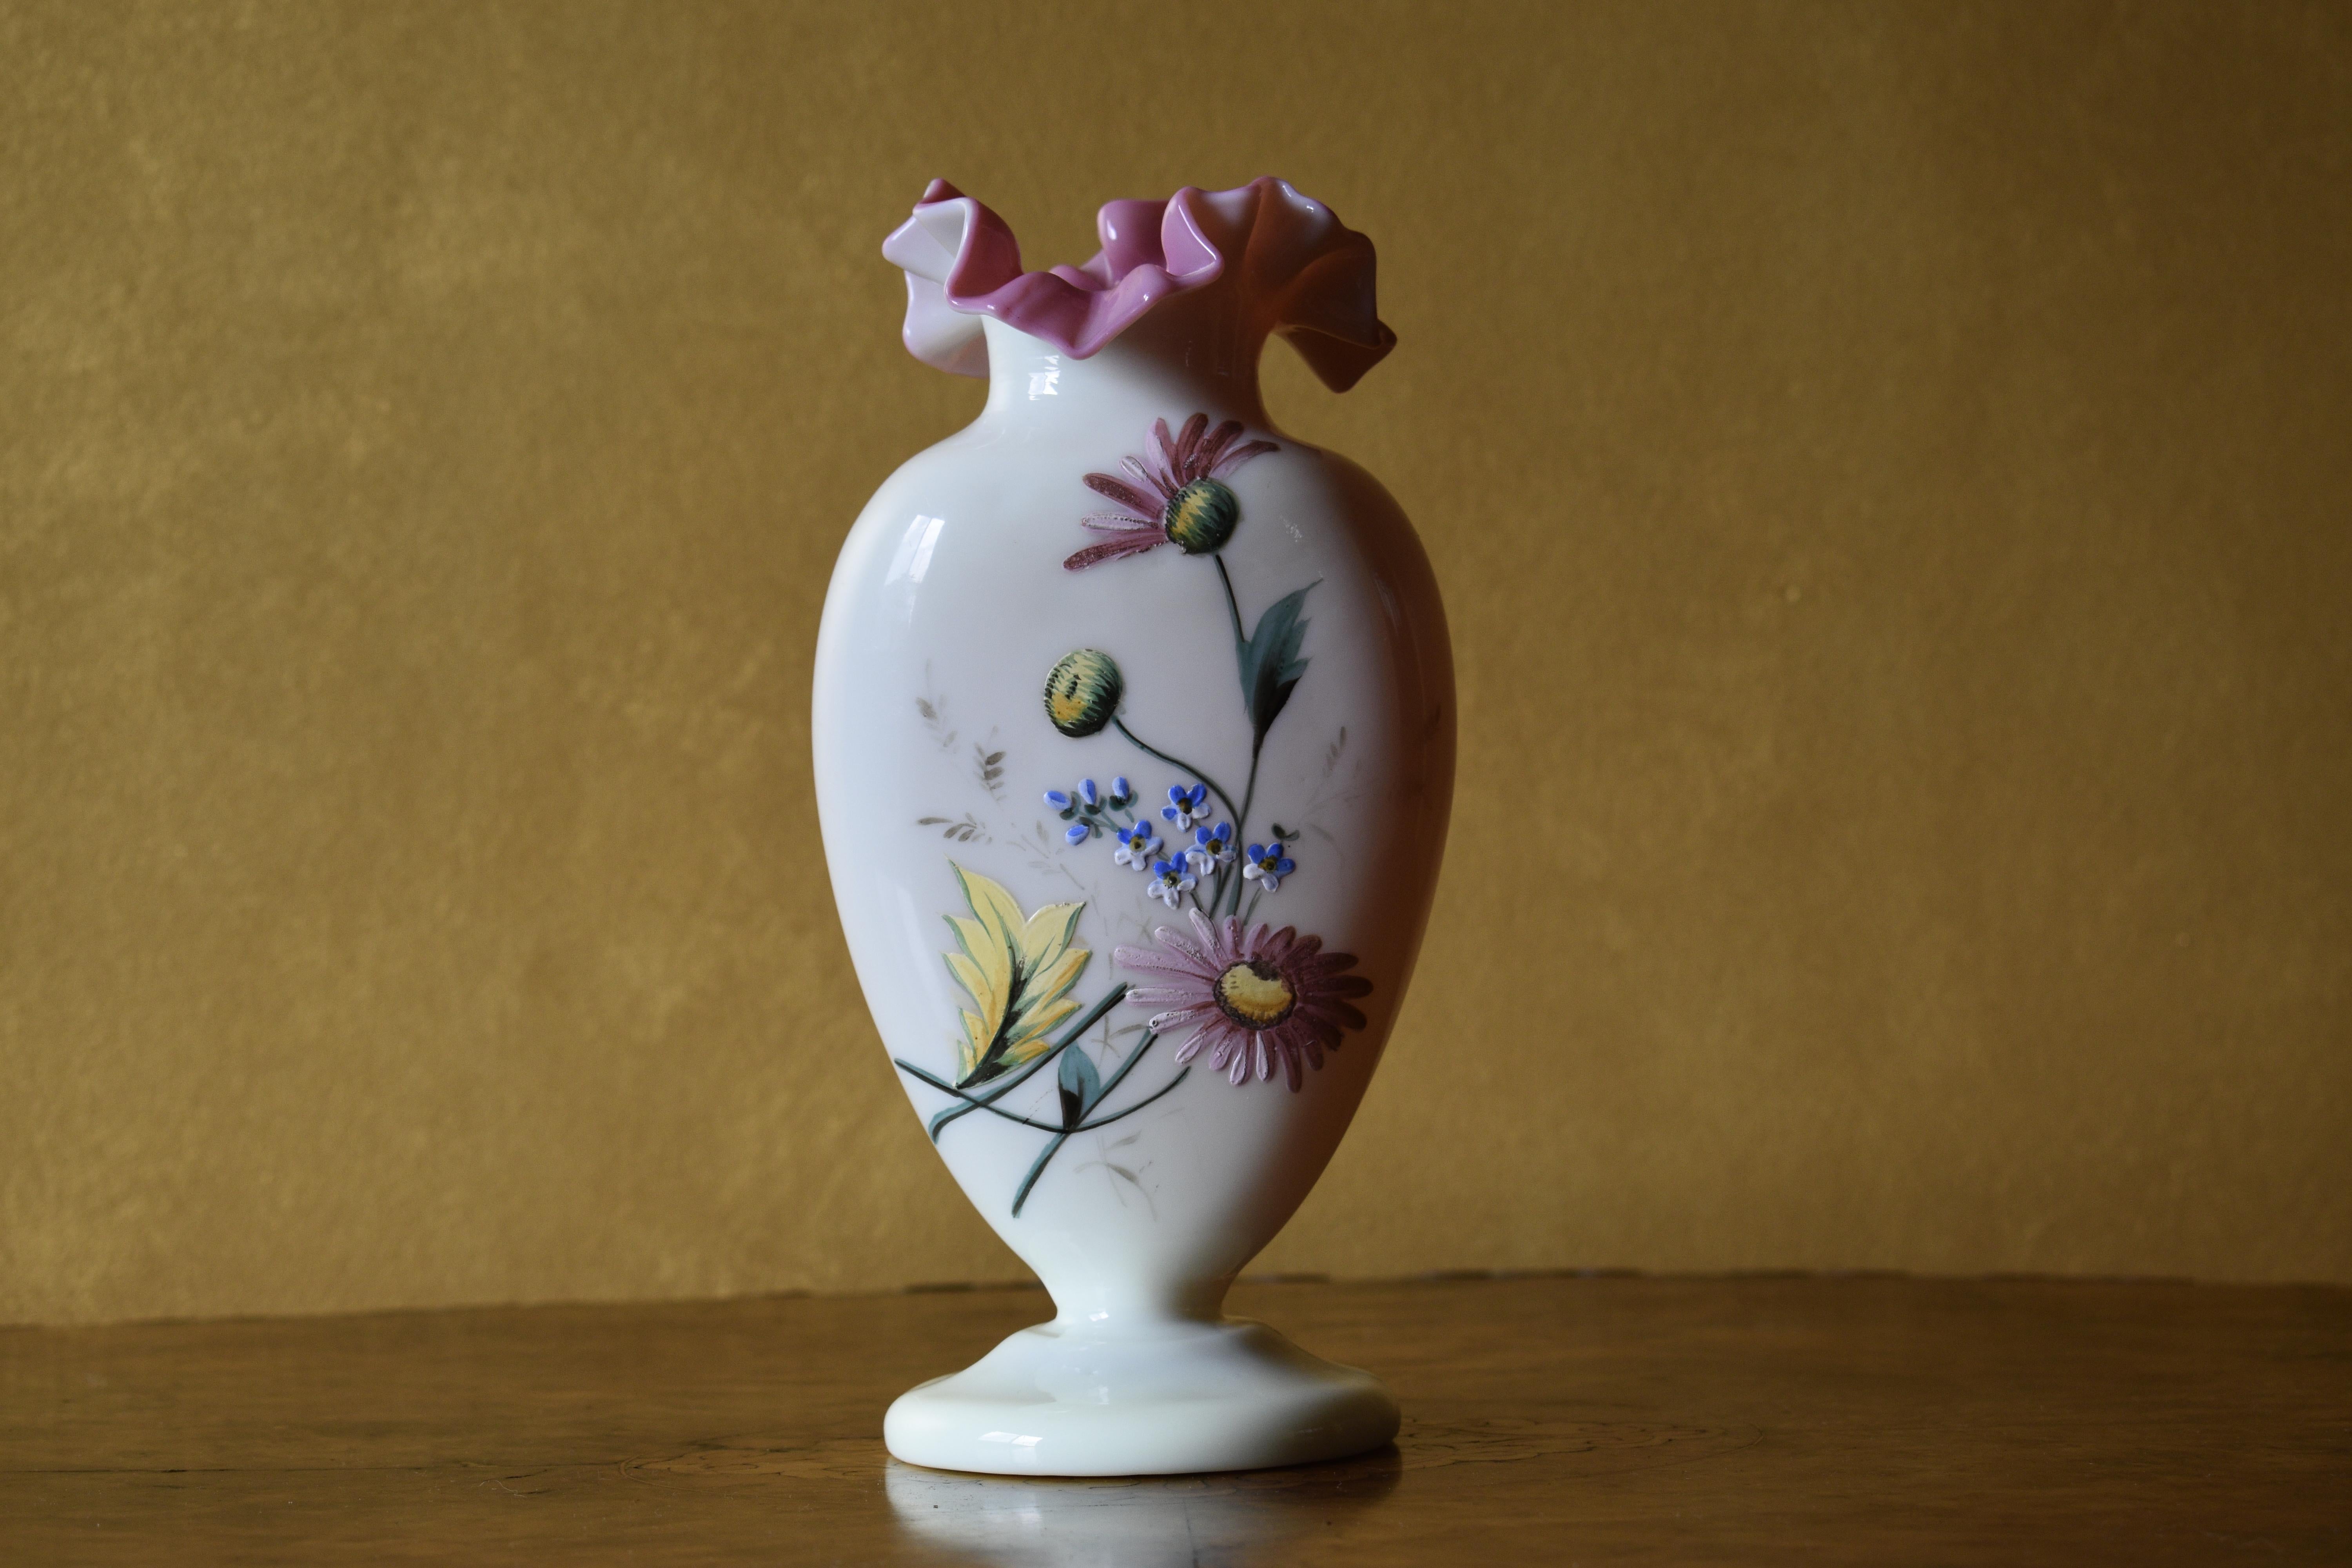 Glasvase mit handgetriebenem Blumendekor und rosa Rüschenrand

CIRCA:1880

MATERIAL: Glas

Abmessungen: 12 cm hoch, Sockel 9,5 cm

Versand per Australia Post und Sendungsverfolgung. 